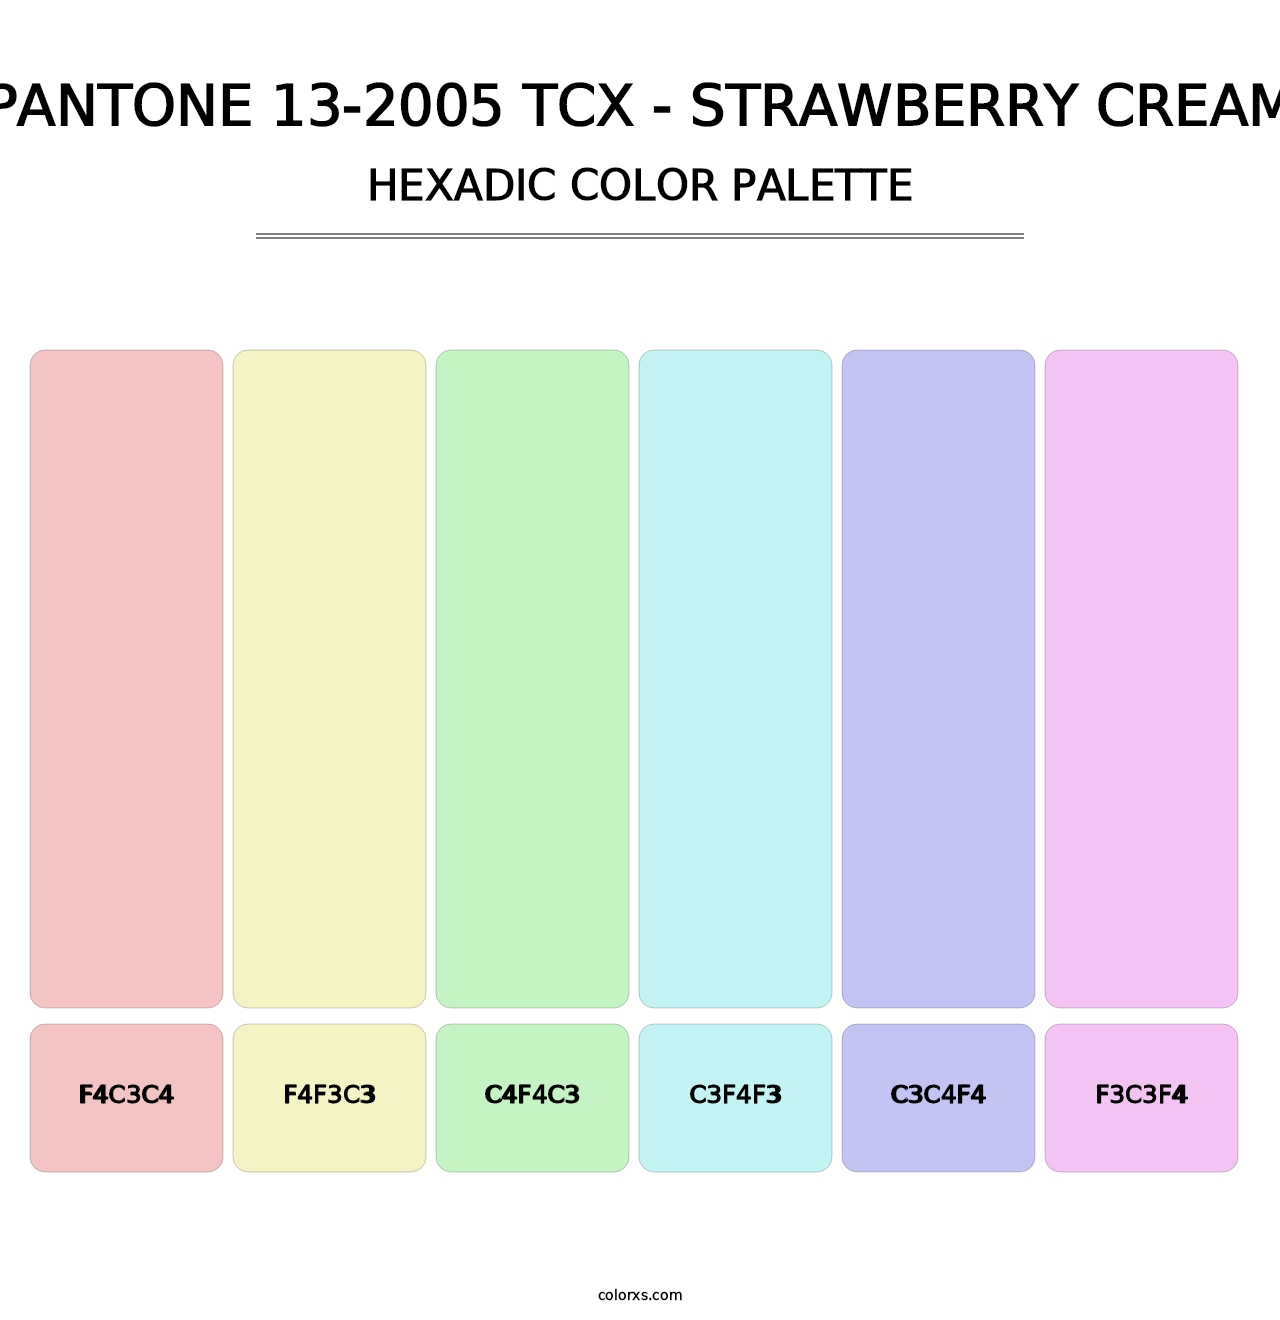 PANTONE 13-2005 TCX - Strawberry Cream - Hexadic Color Palette